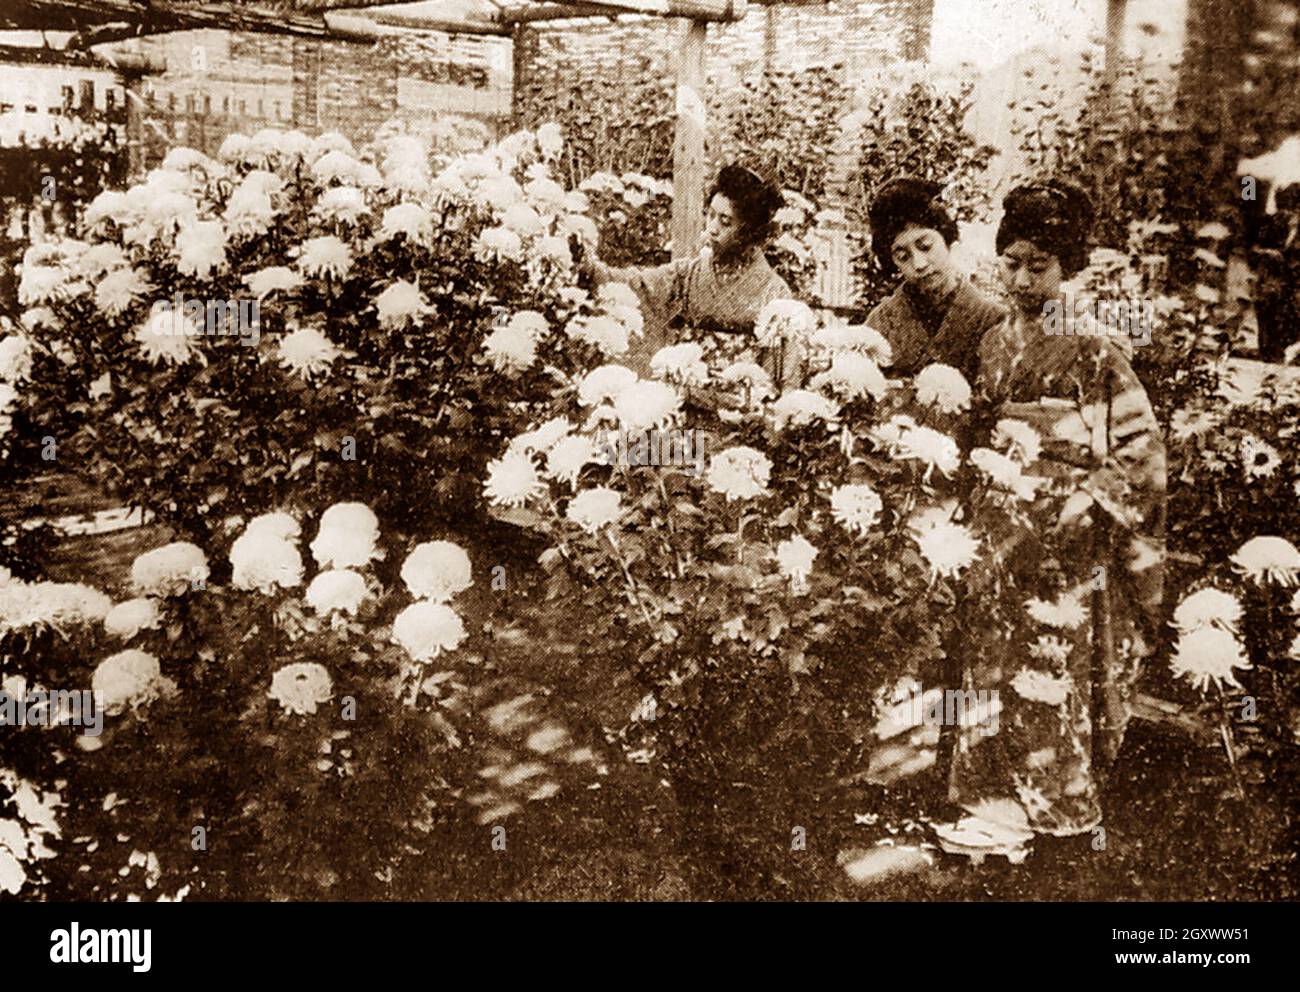 Spectacle de chrysanthème, Japon, début des années 1900 Banque D'Images